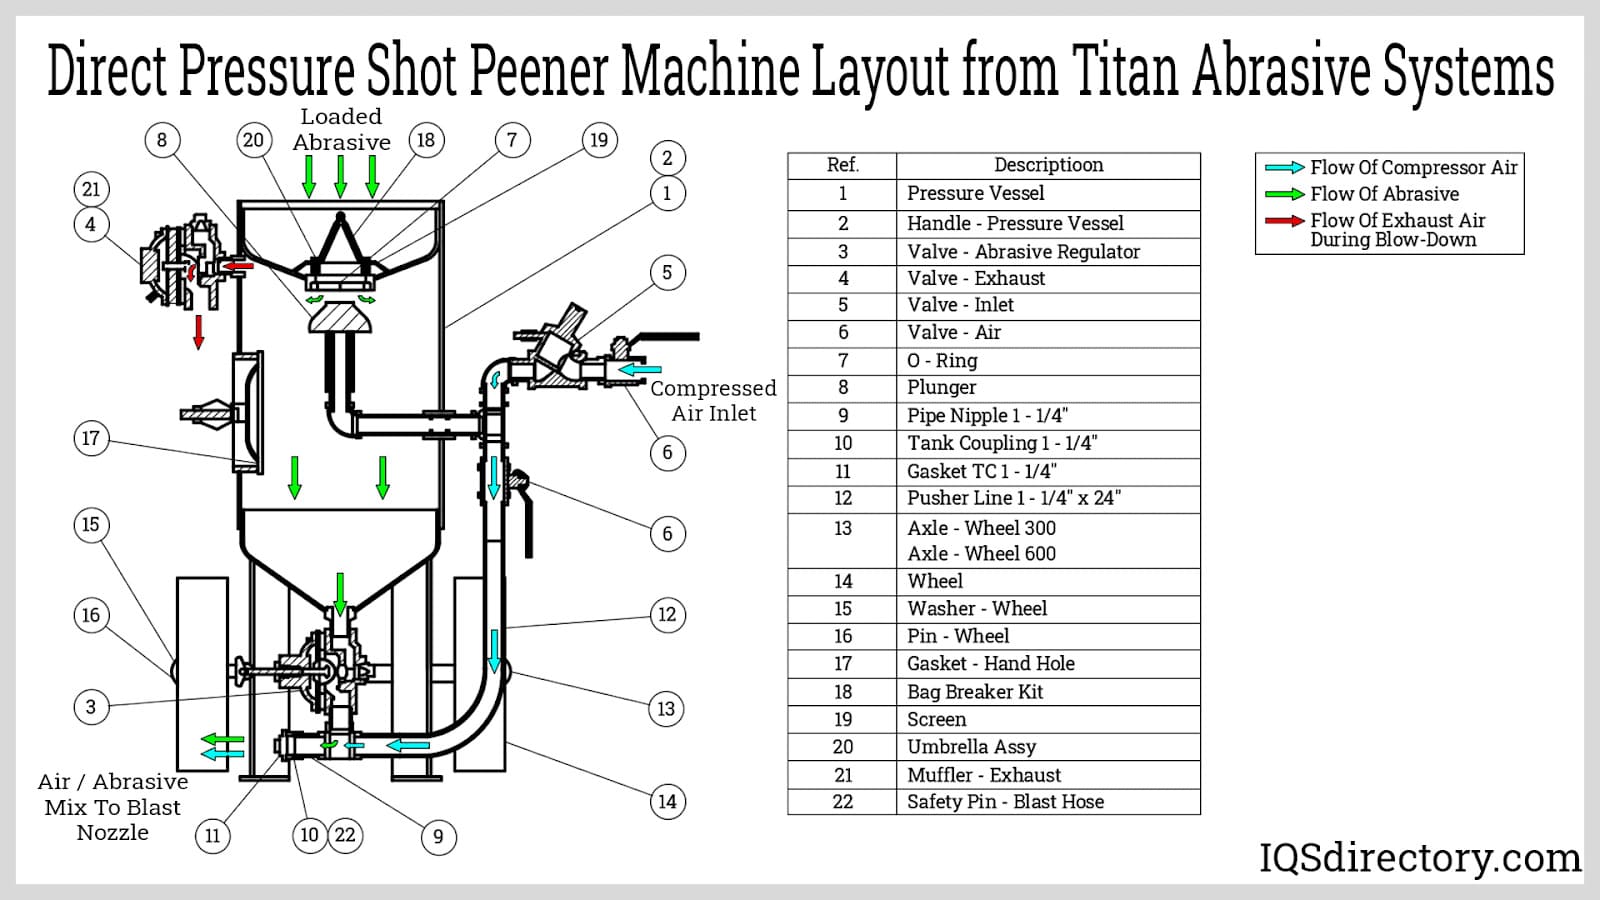 Direct Pressure Shot Peener Machine Layout